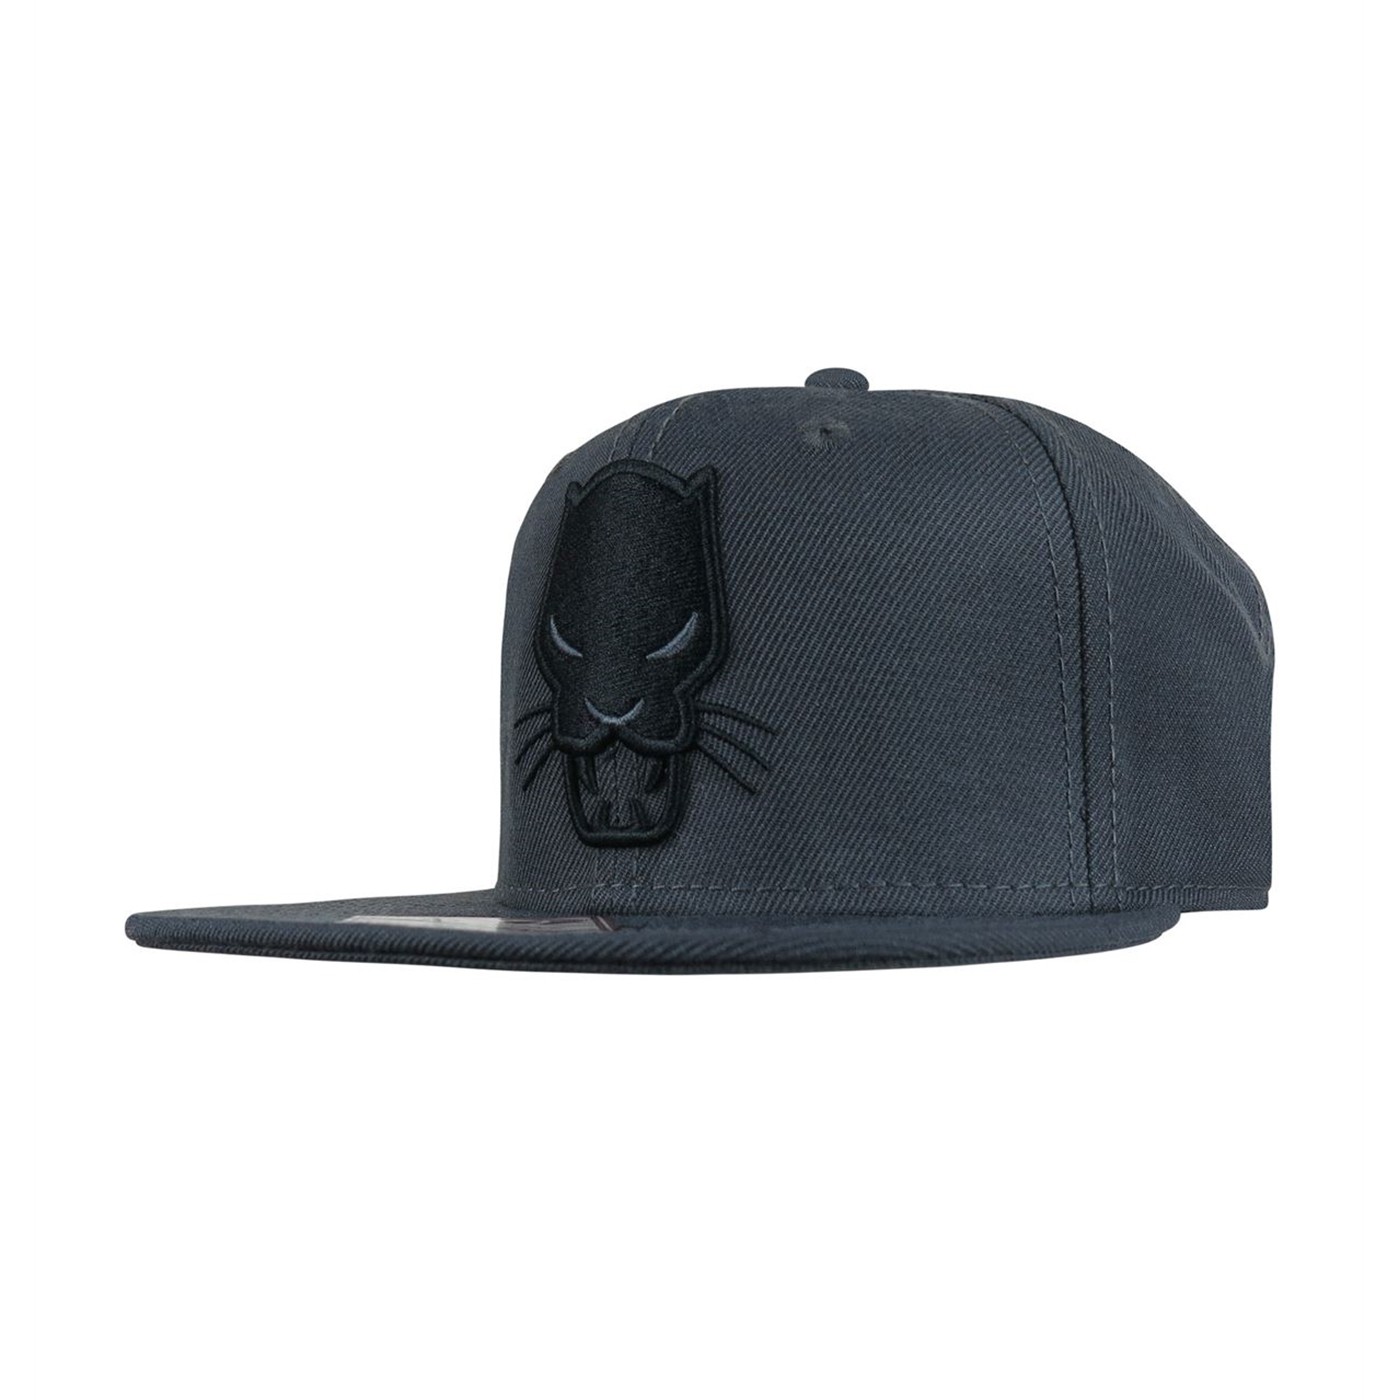 Black Panther Image Snapback Hat